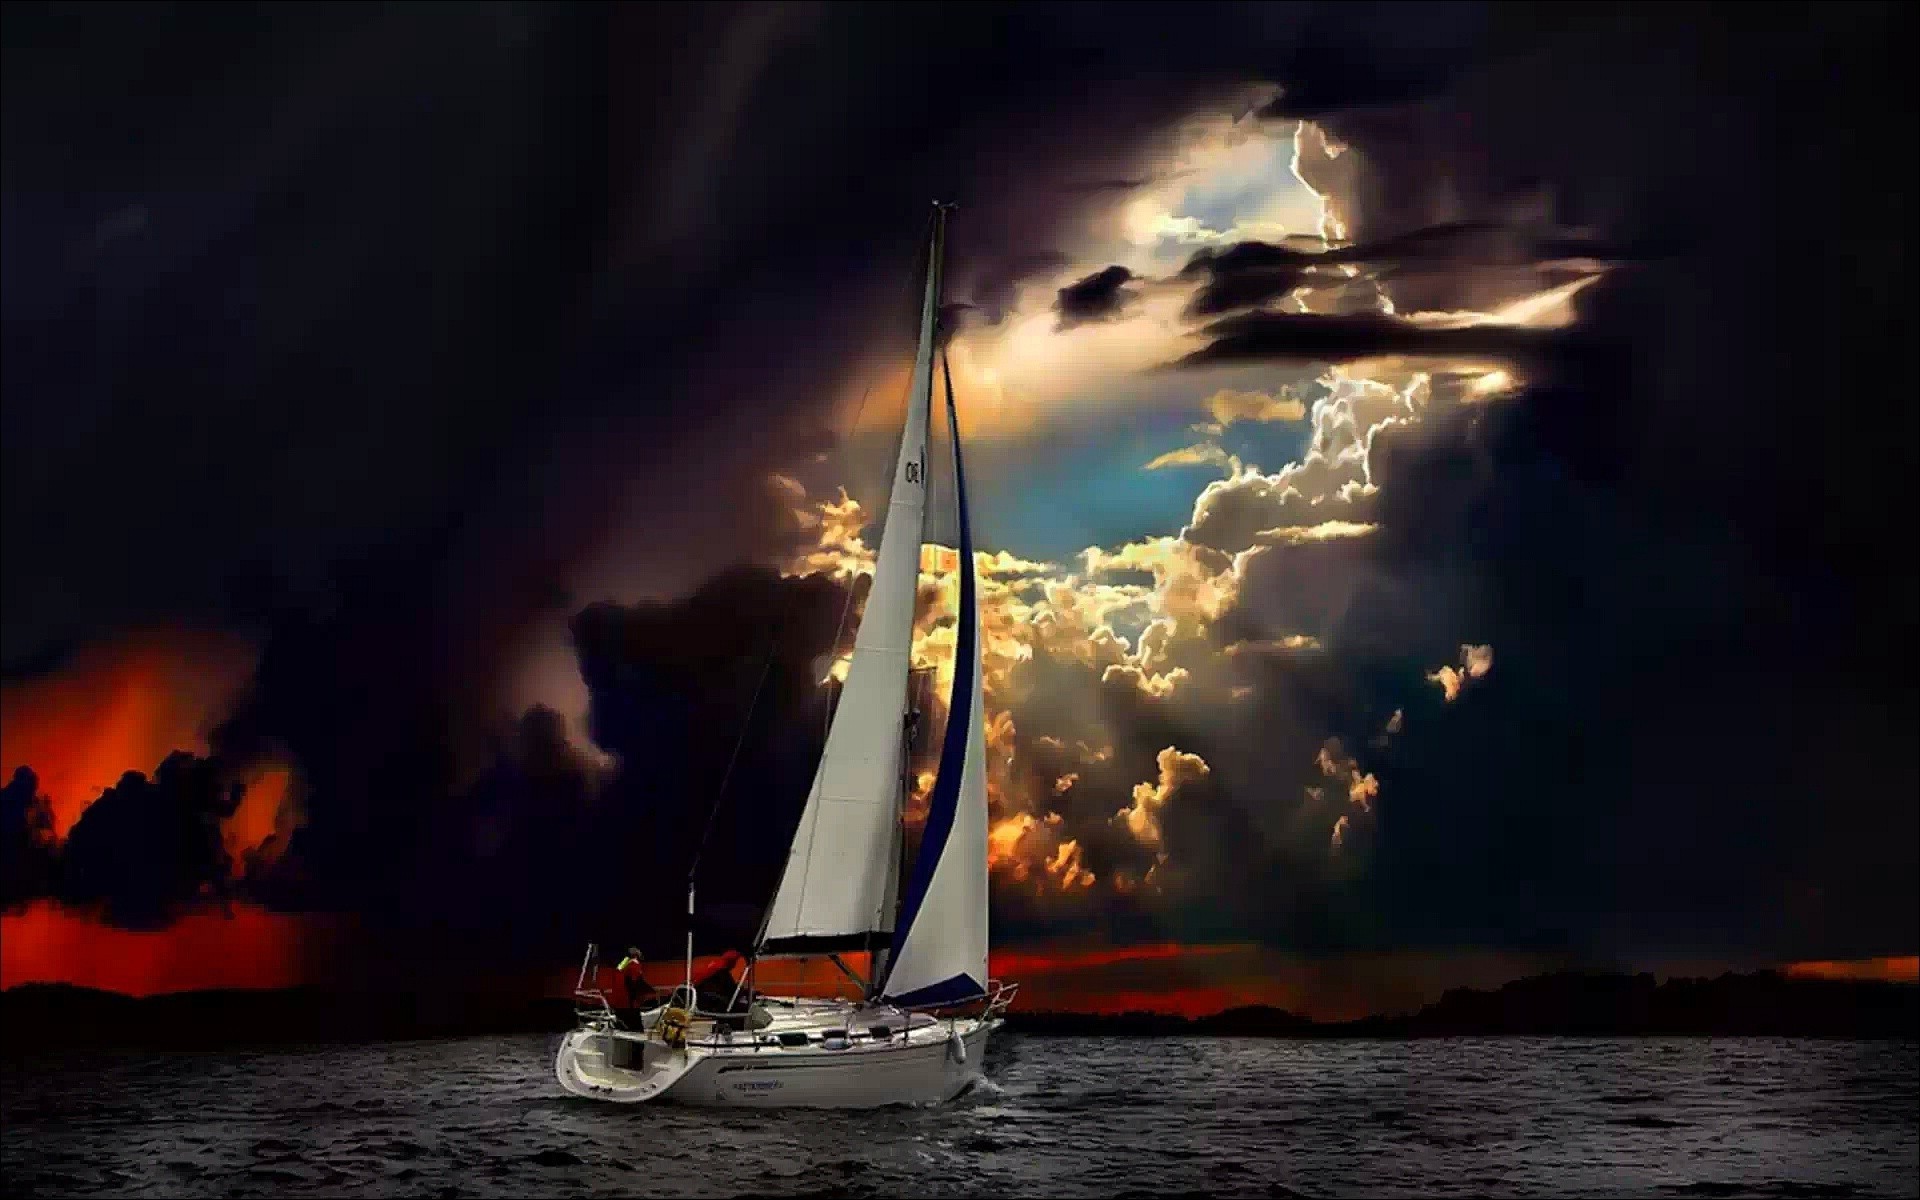 парусный спорт воды закат океан парусник вечером море плавсредство лодка рассвет небо сумрак корабль пляж путешествия моря пейзаж солнце пейзаж парус